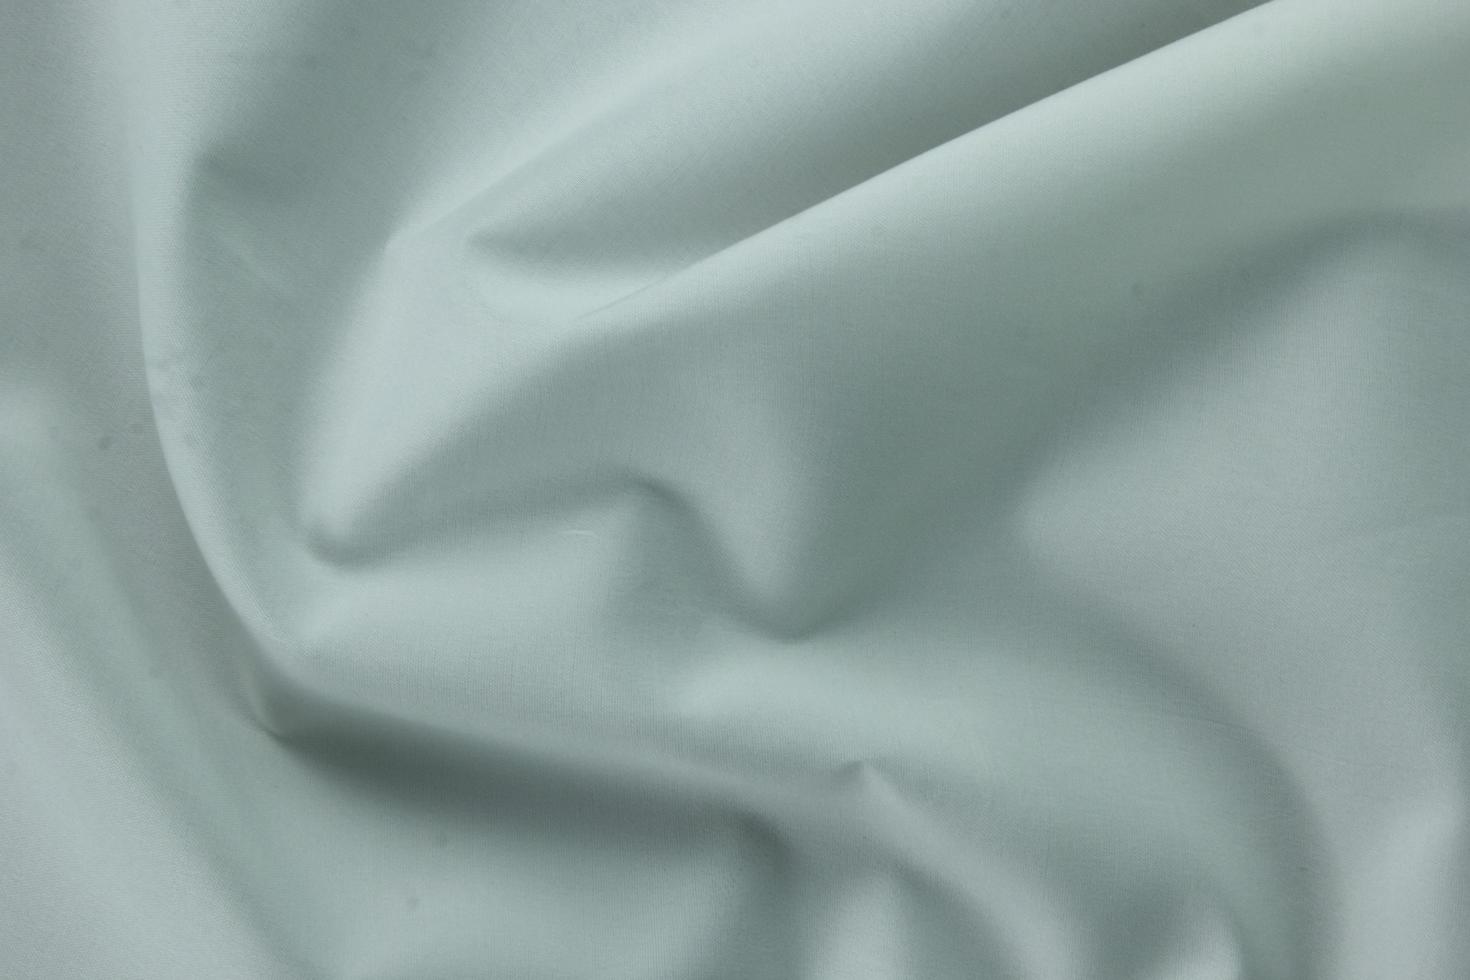 13 textura suave de algodón blanco, fondo de seda curva, patrón. textura de tela de seda blanca. hermosa seda suave esmeralda. foto